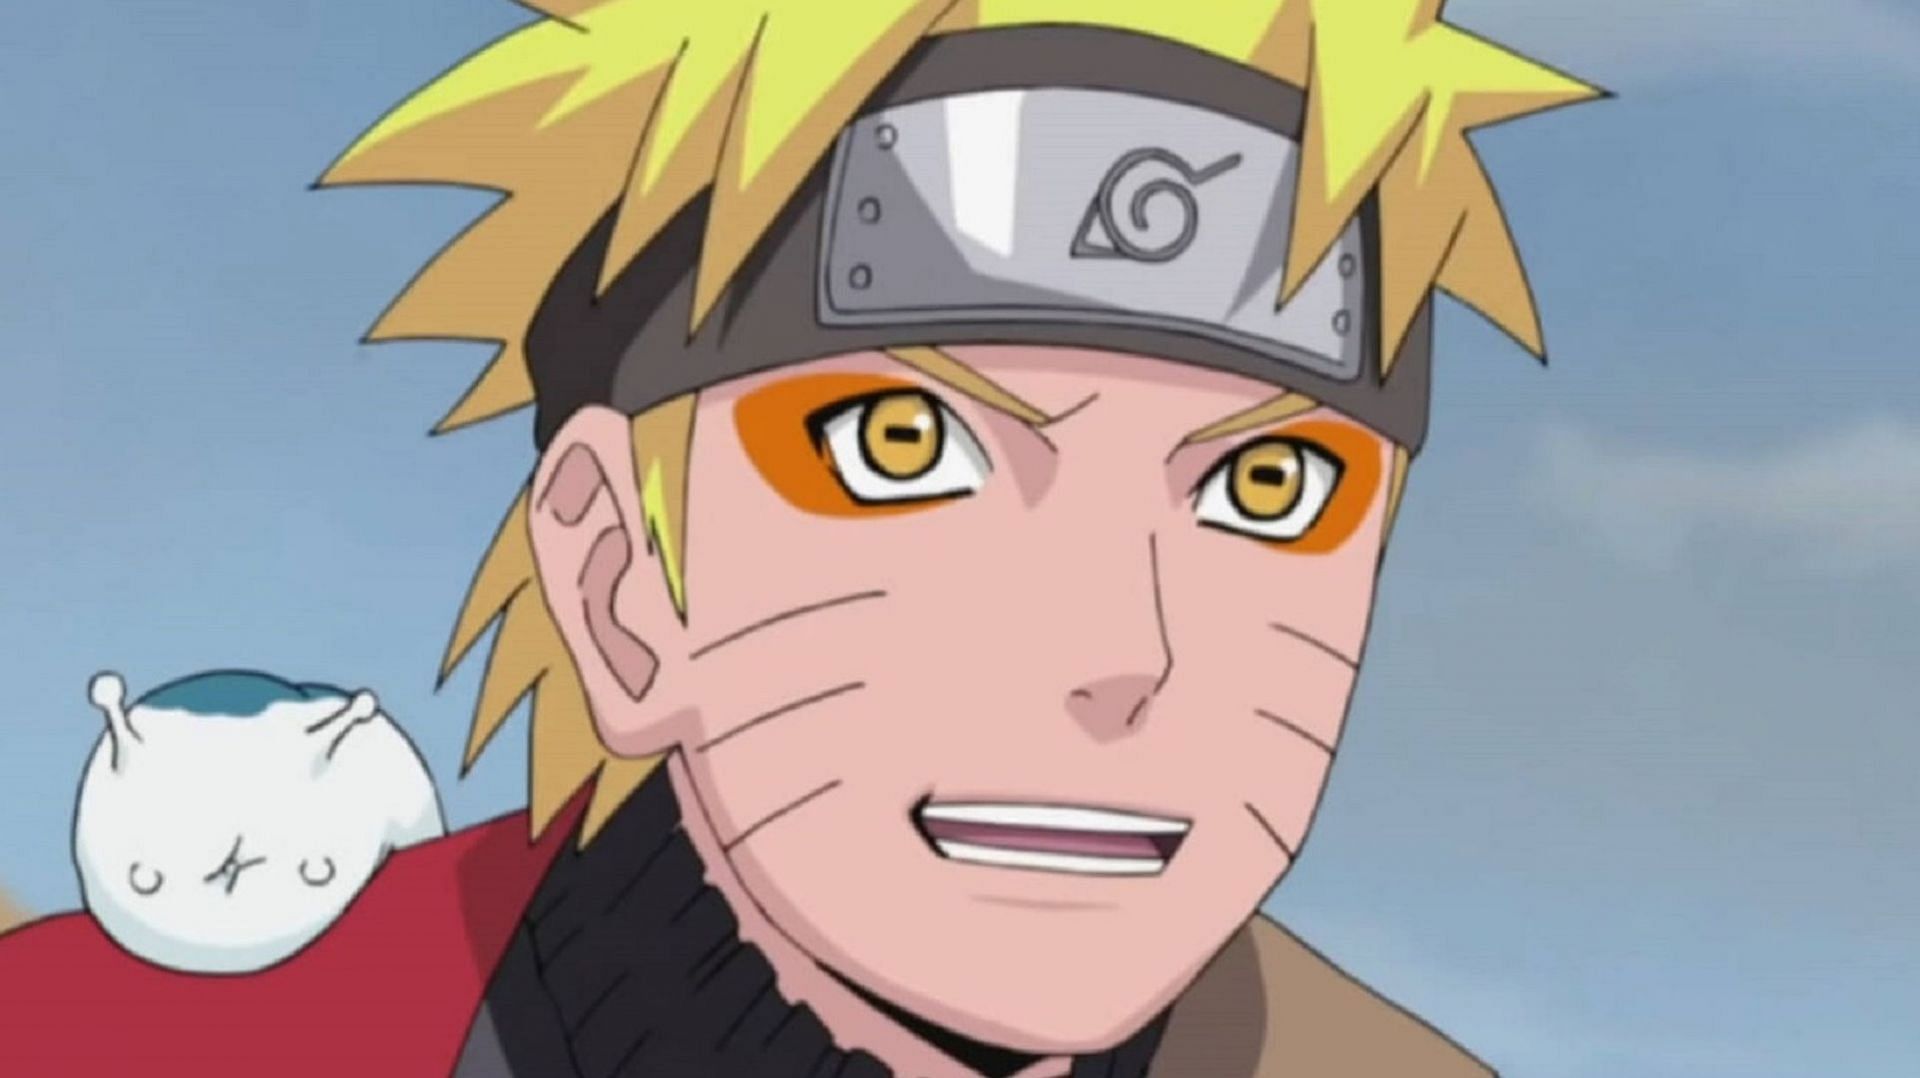 Naruto Shippuden (Image via Funimation)